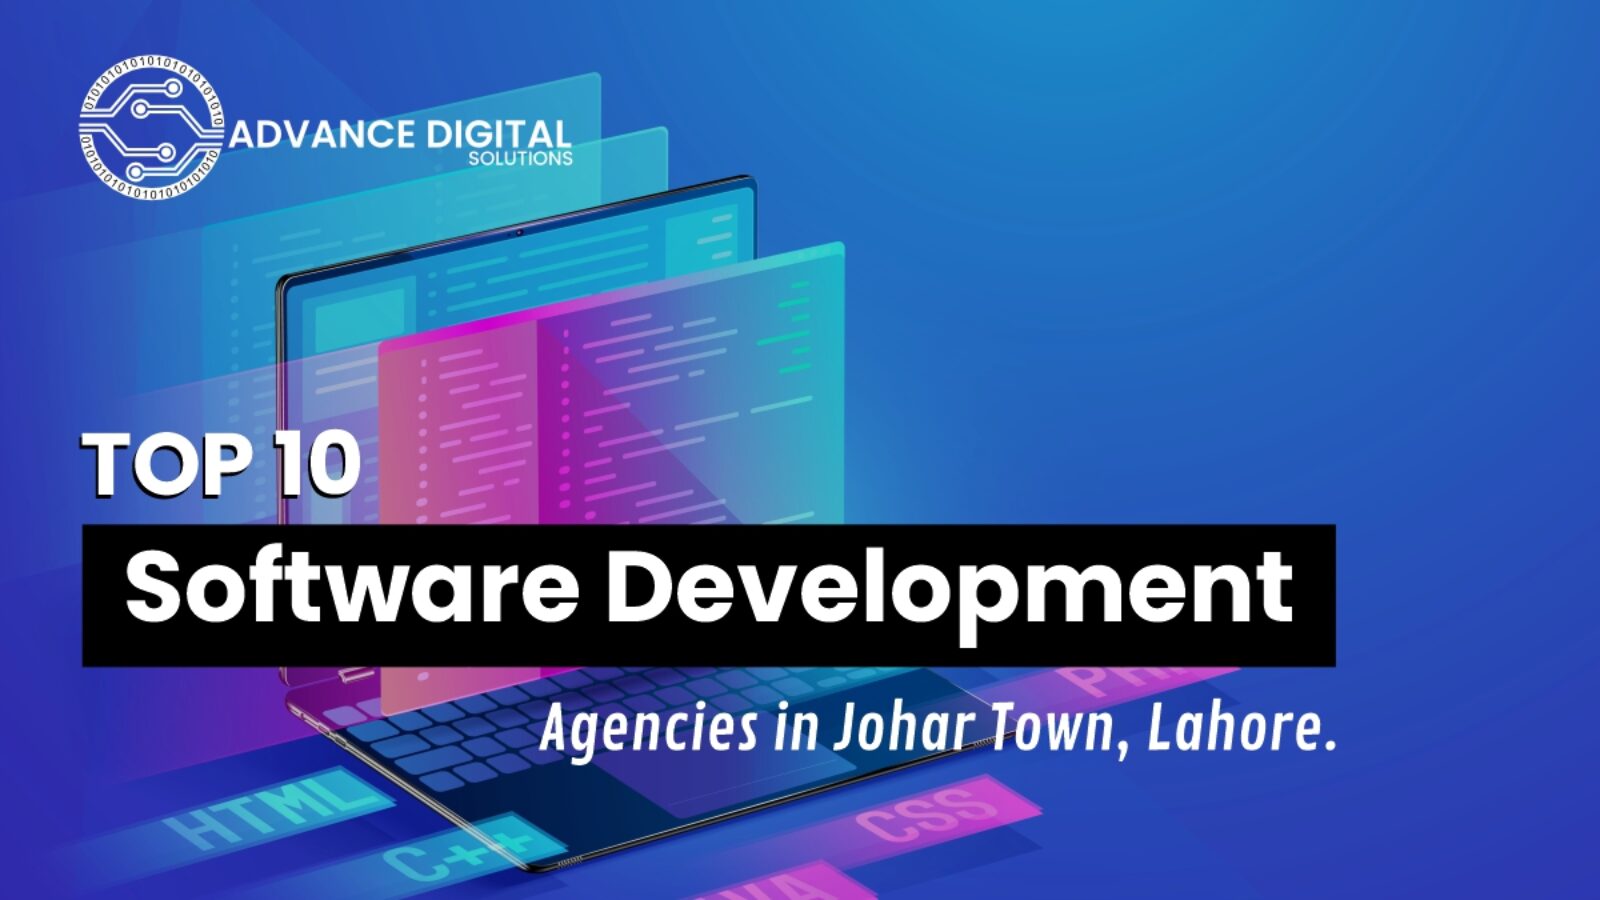 Top 10 Software Development Agencies in Johar Town, Lahore